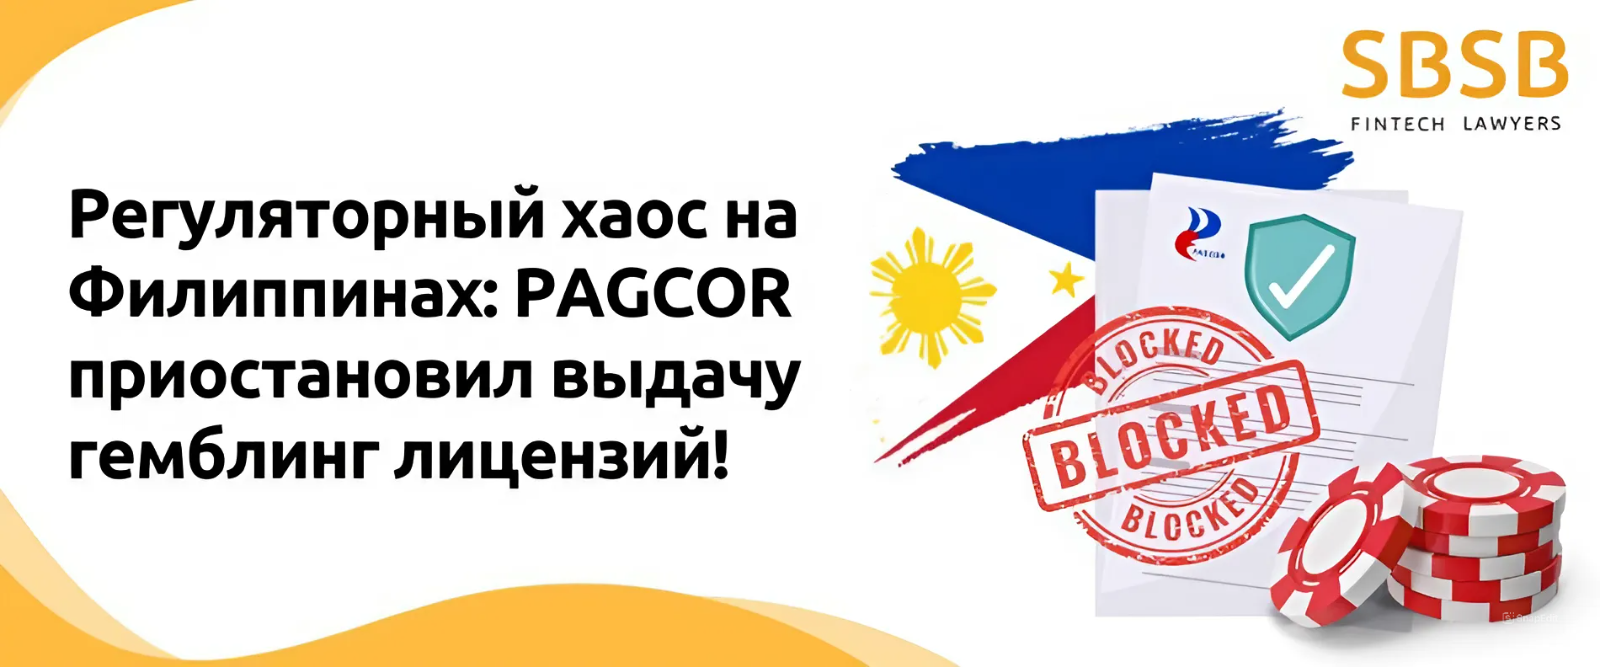 Регуляторный хаос на Филиппинах: PAGCOR приостановил выдачу гемблинг лицензий! - фото 43378